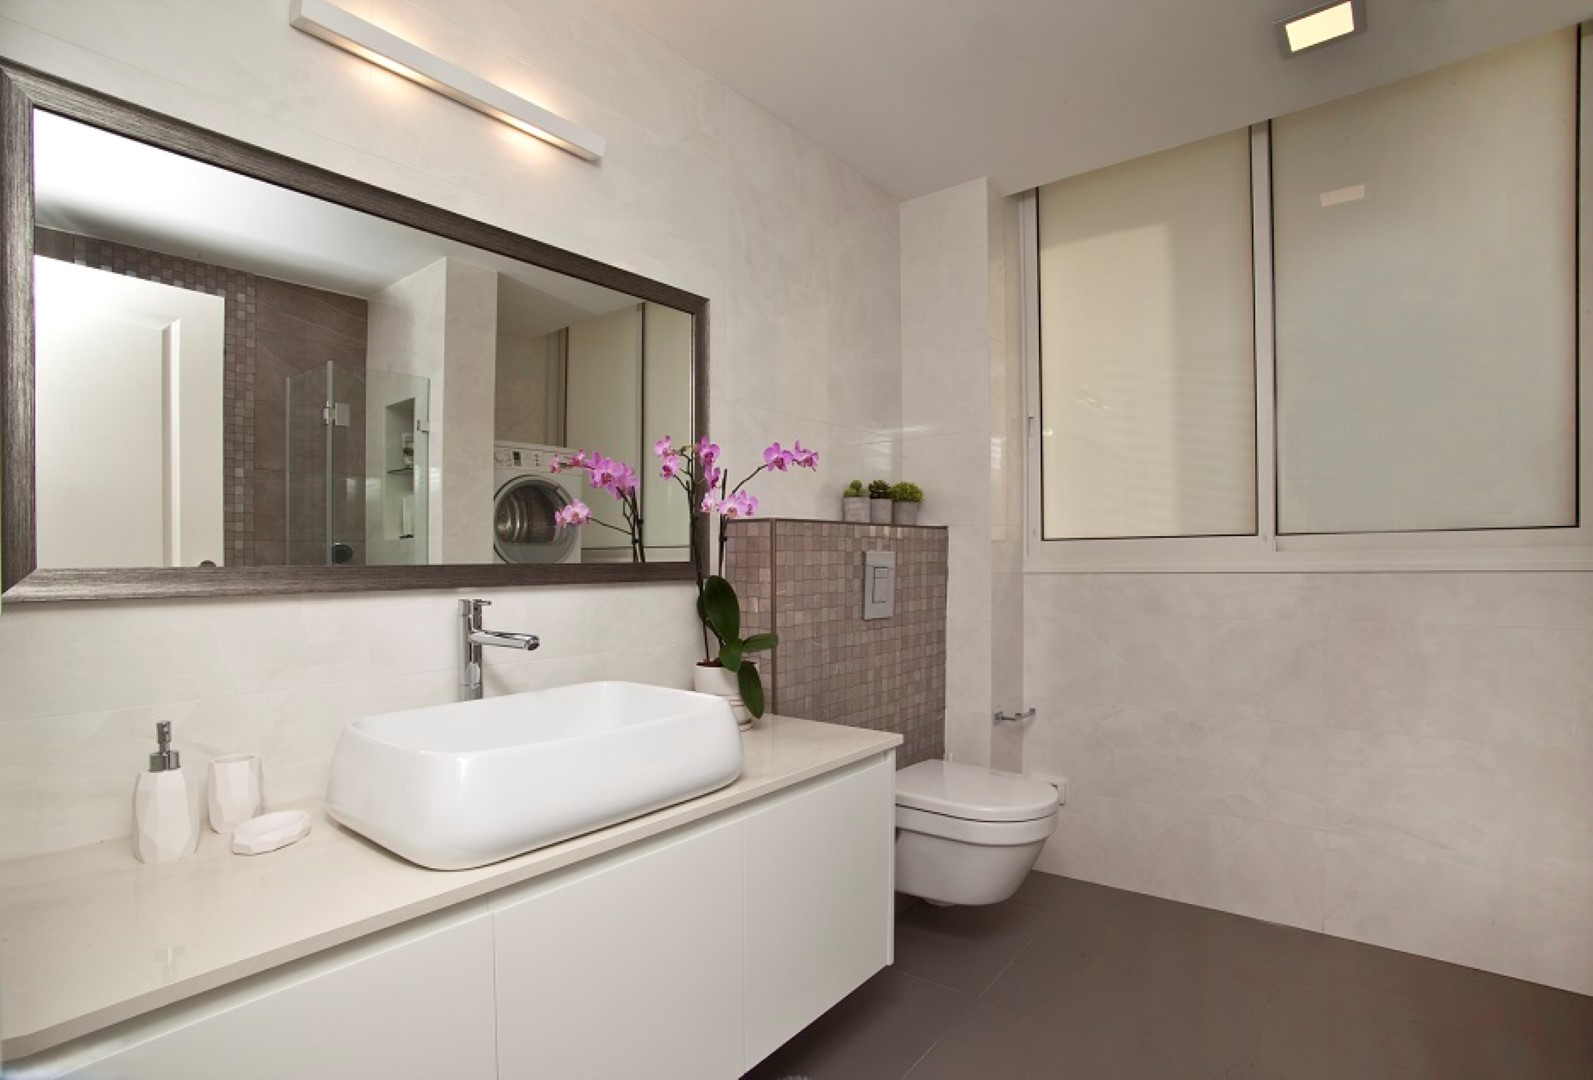 חדר מקלחת הורים. כולל מקום מרווח למכונת כביסה (צילום: רן ארדה) (צילום: רן ארדה)